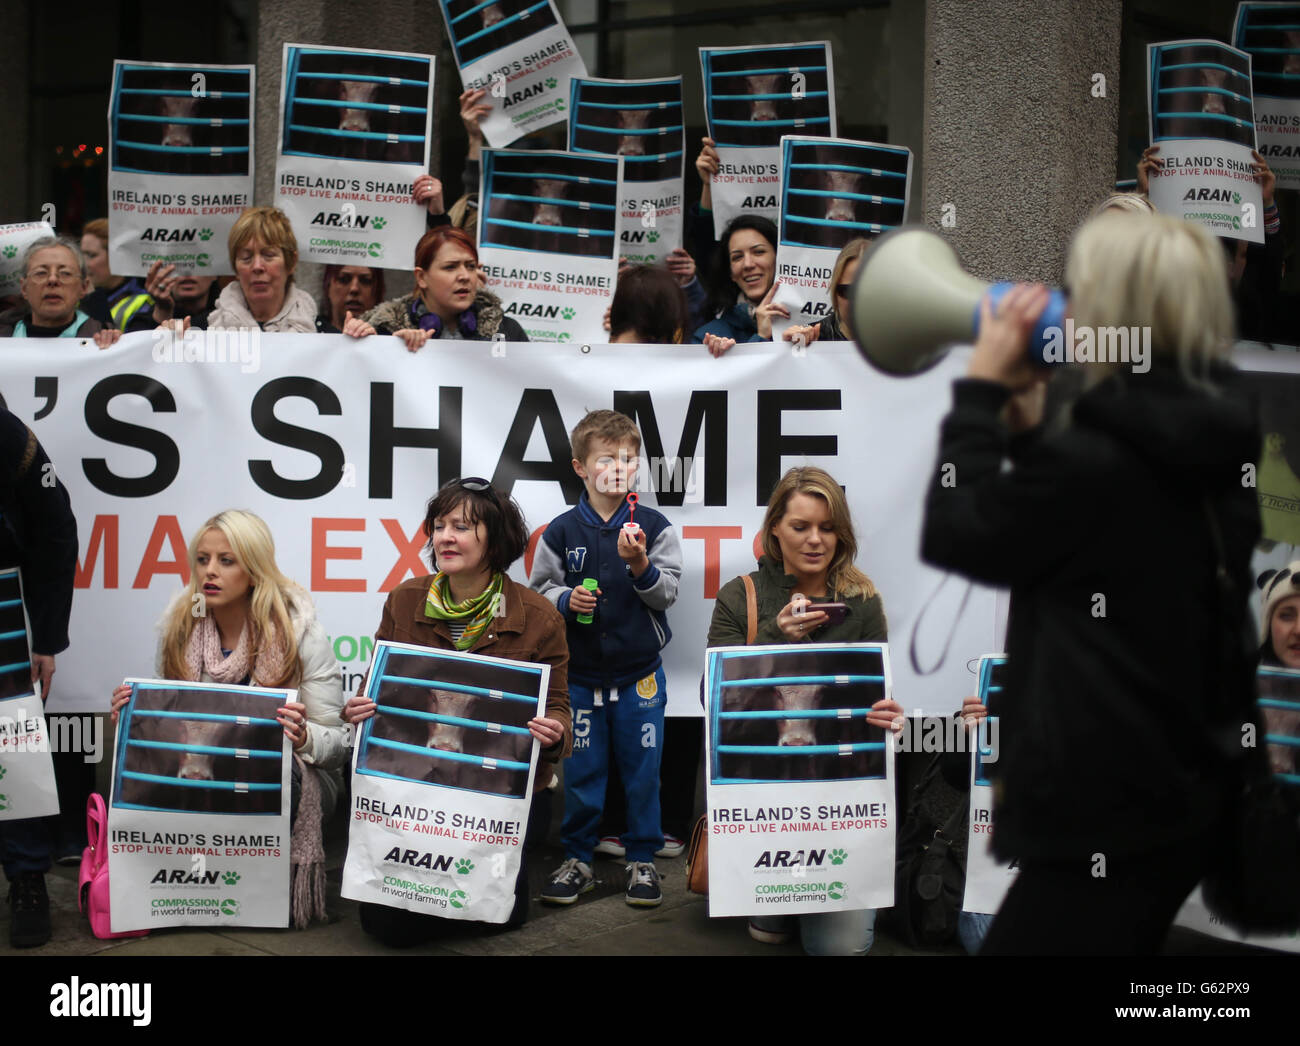 Gli attivisti della Animal Rights Action Network oggi si sono schierati contro le esportazioni vive provenienti dall'Irlanda presso il dipartimento dell'agricoltura di Dublino. Foto Stock